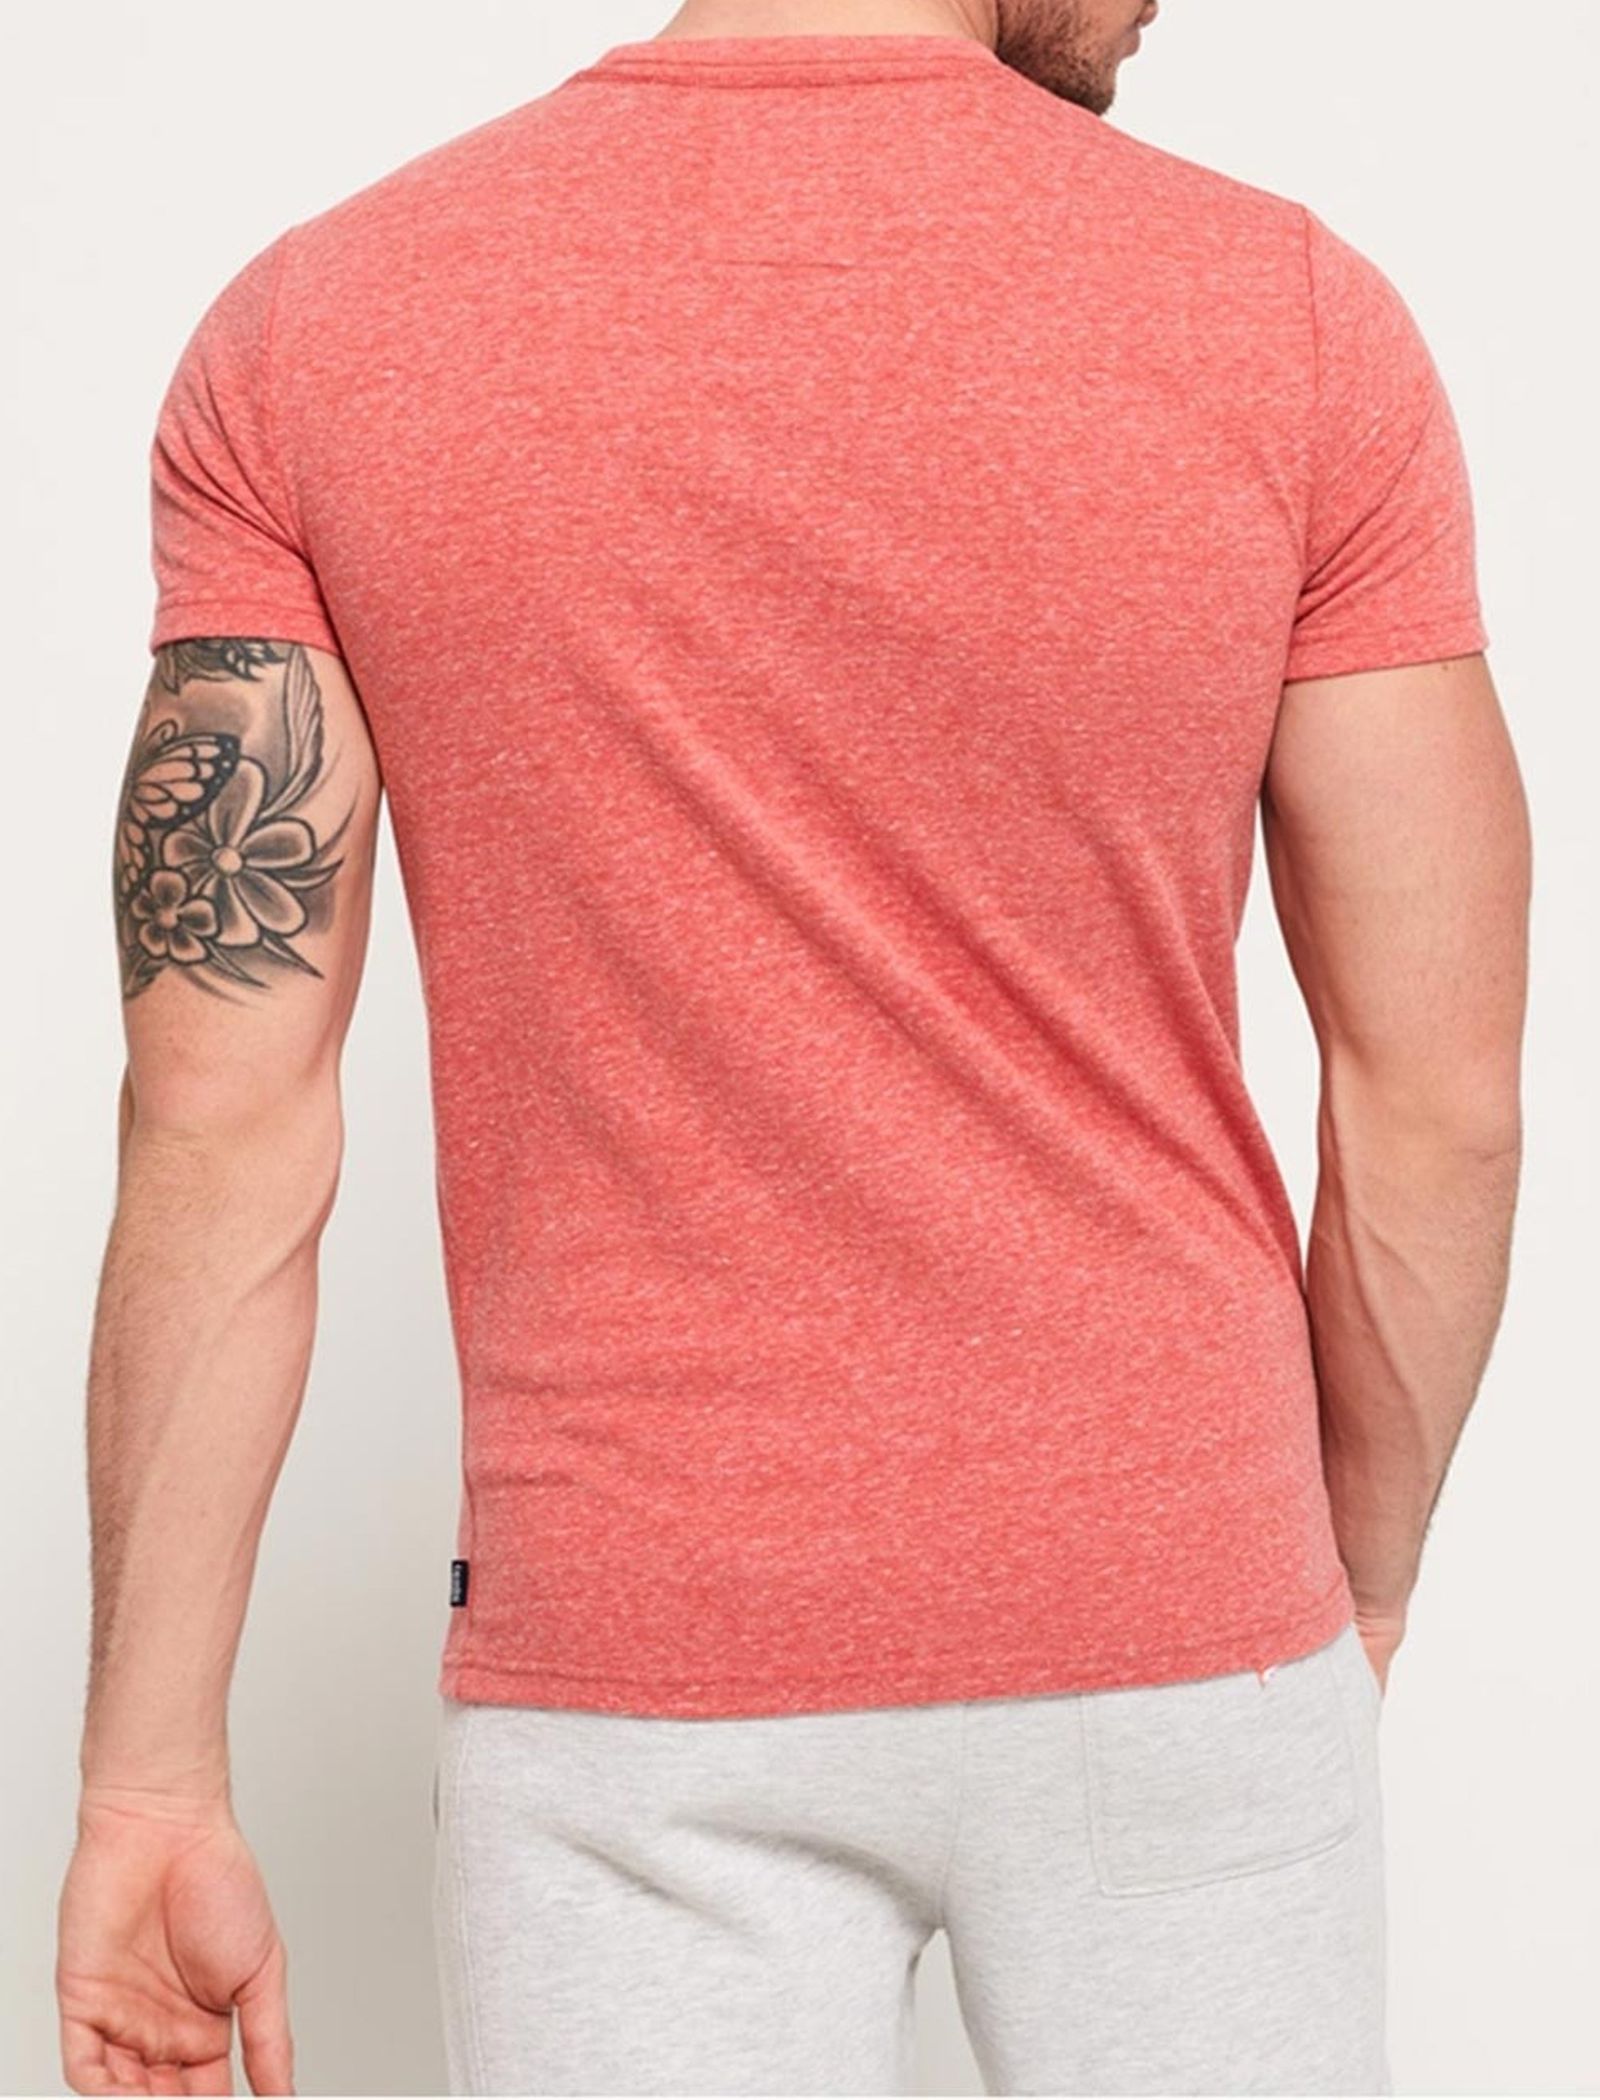 تی شرت یقه گرد مردانه - سوپردرای - قرمز - 5